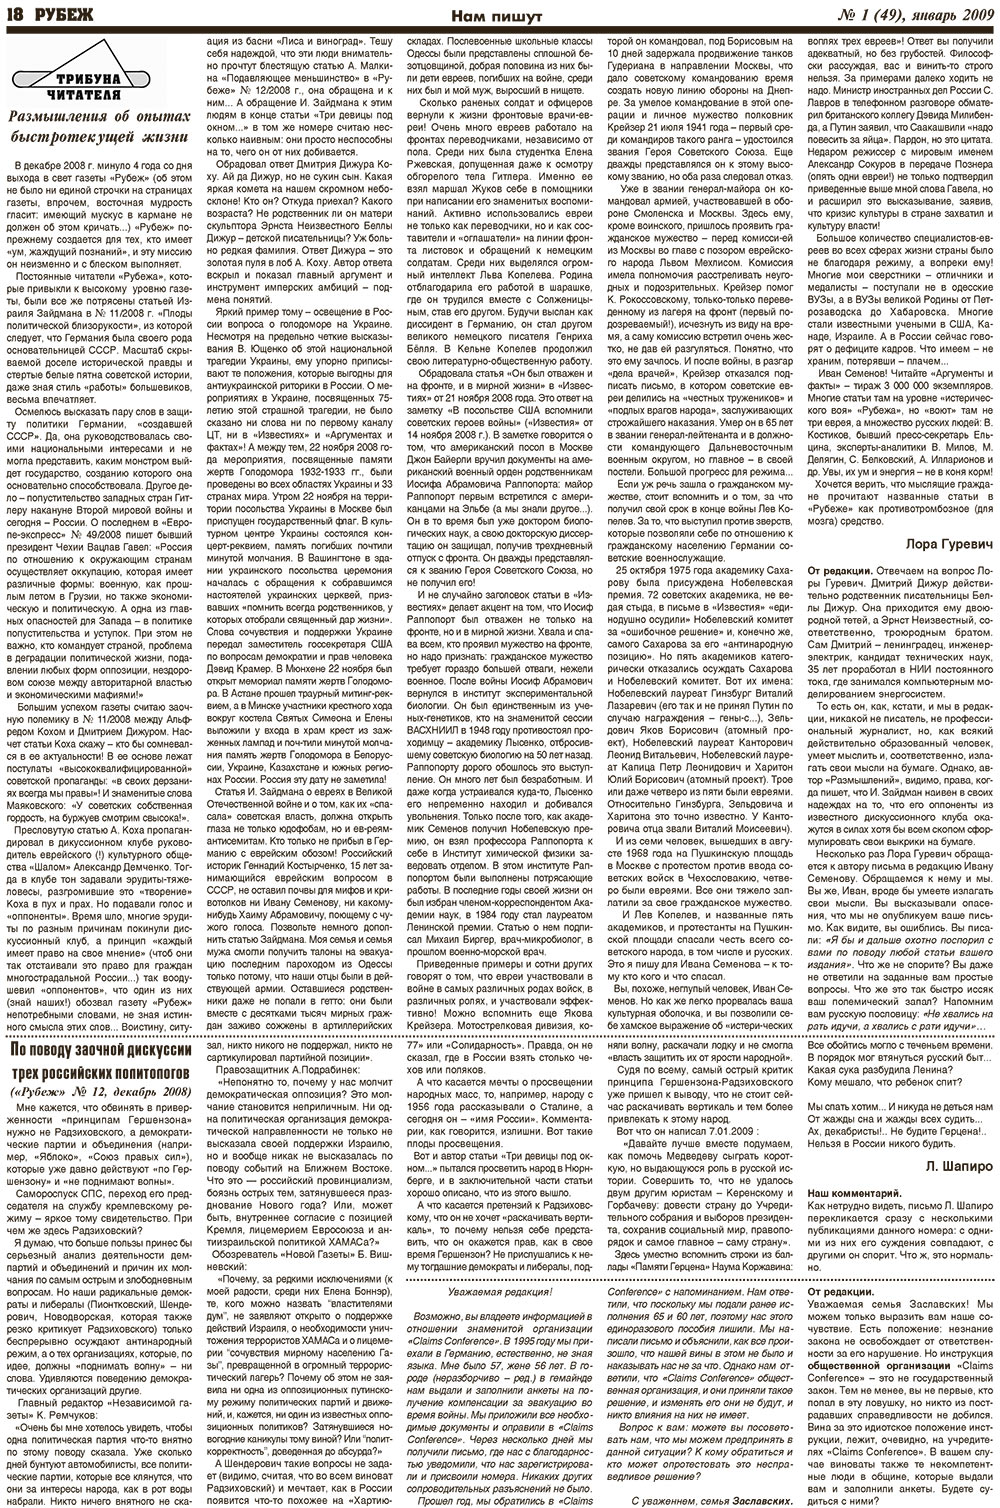 Рубеж (газета). 2009 год, номер 1, стр. 18